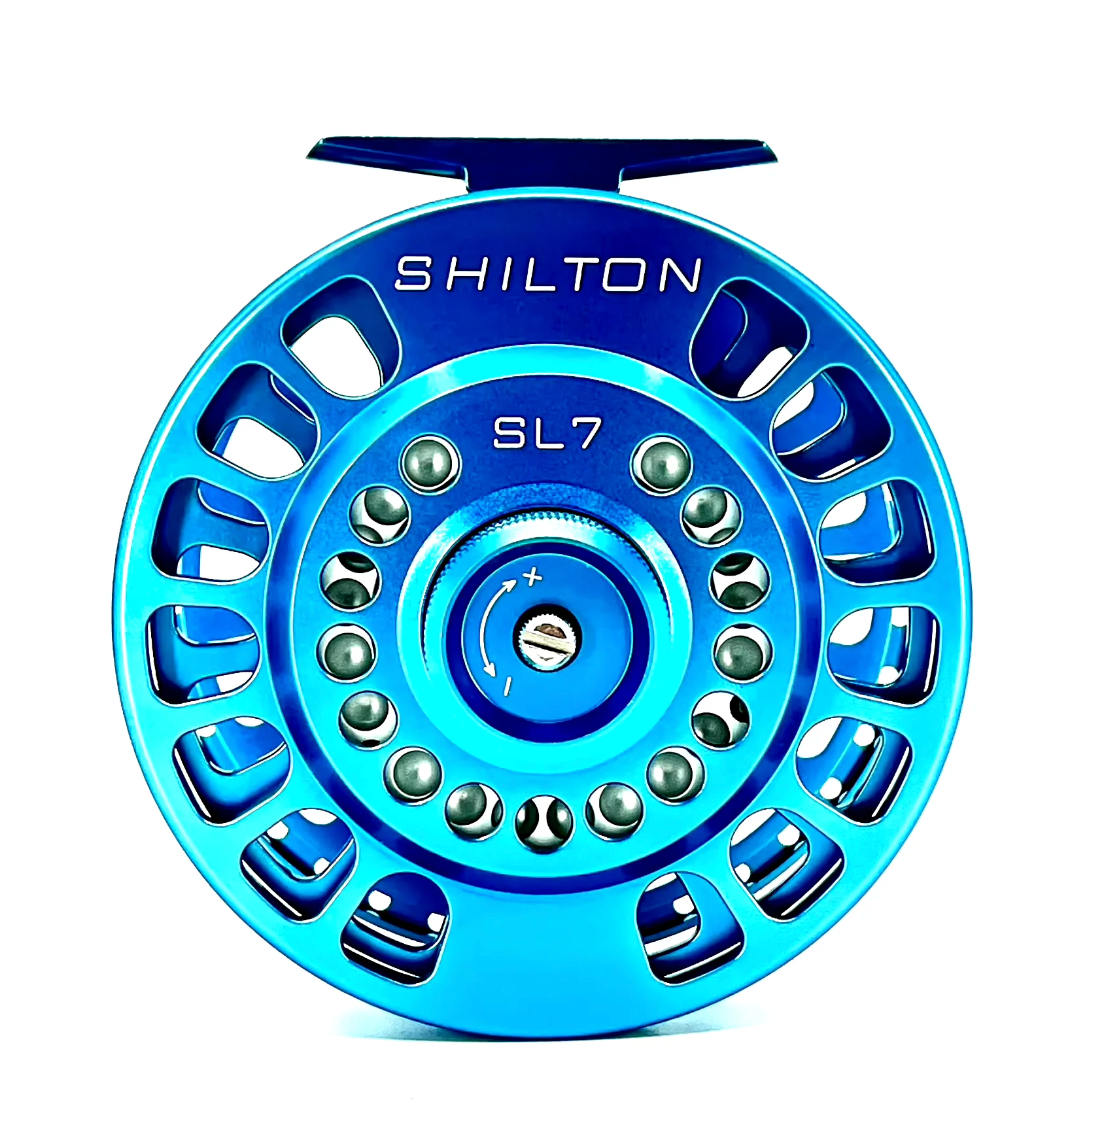 Shilton SL7 Reel